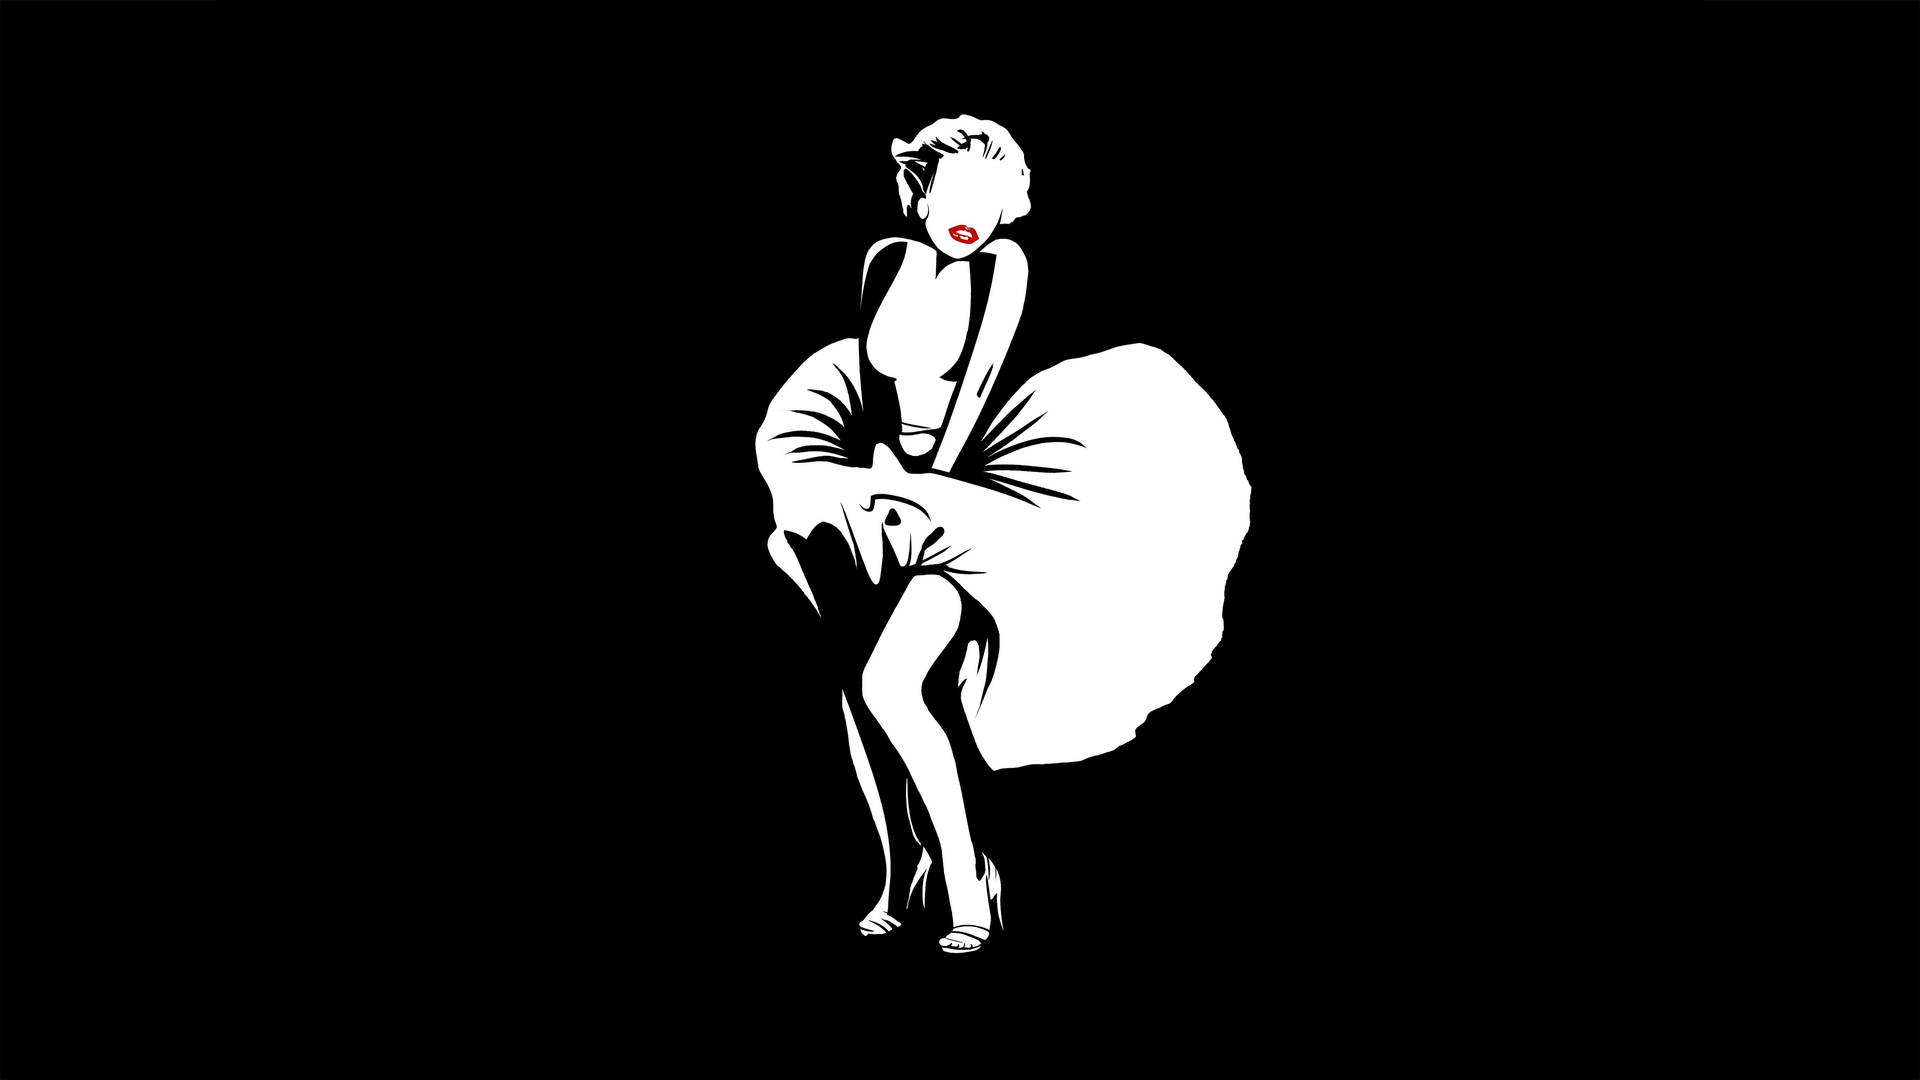 Marilyn Monroe Dress Dance Wallpaper